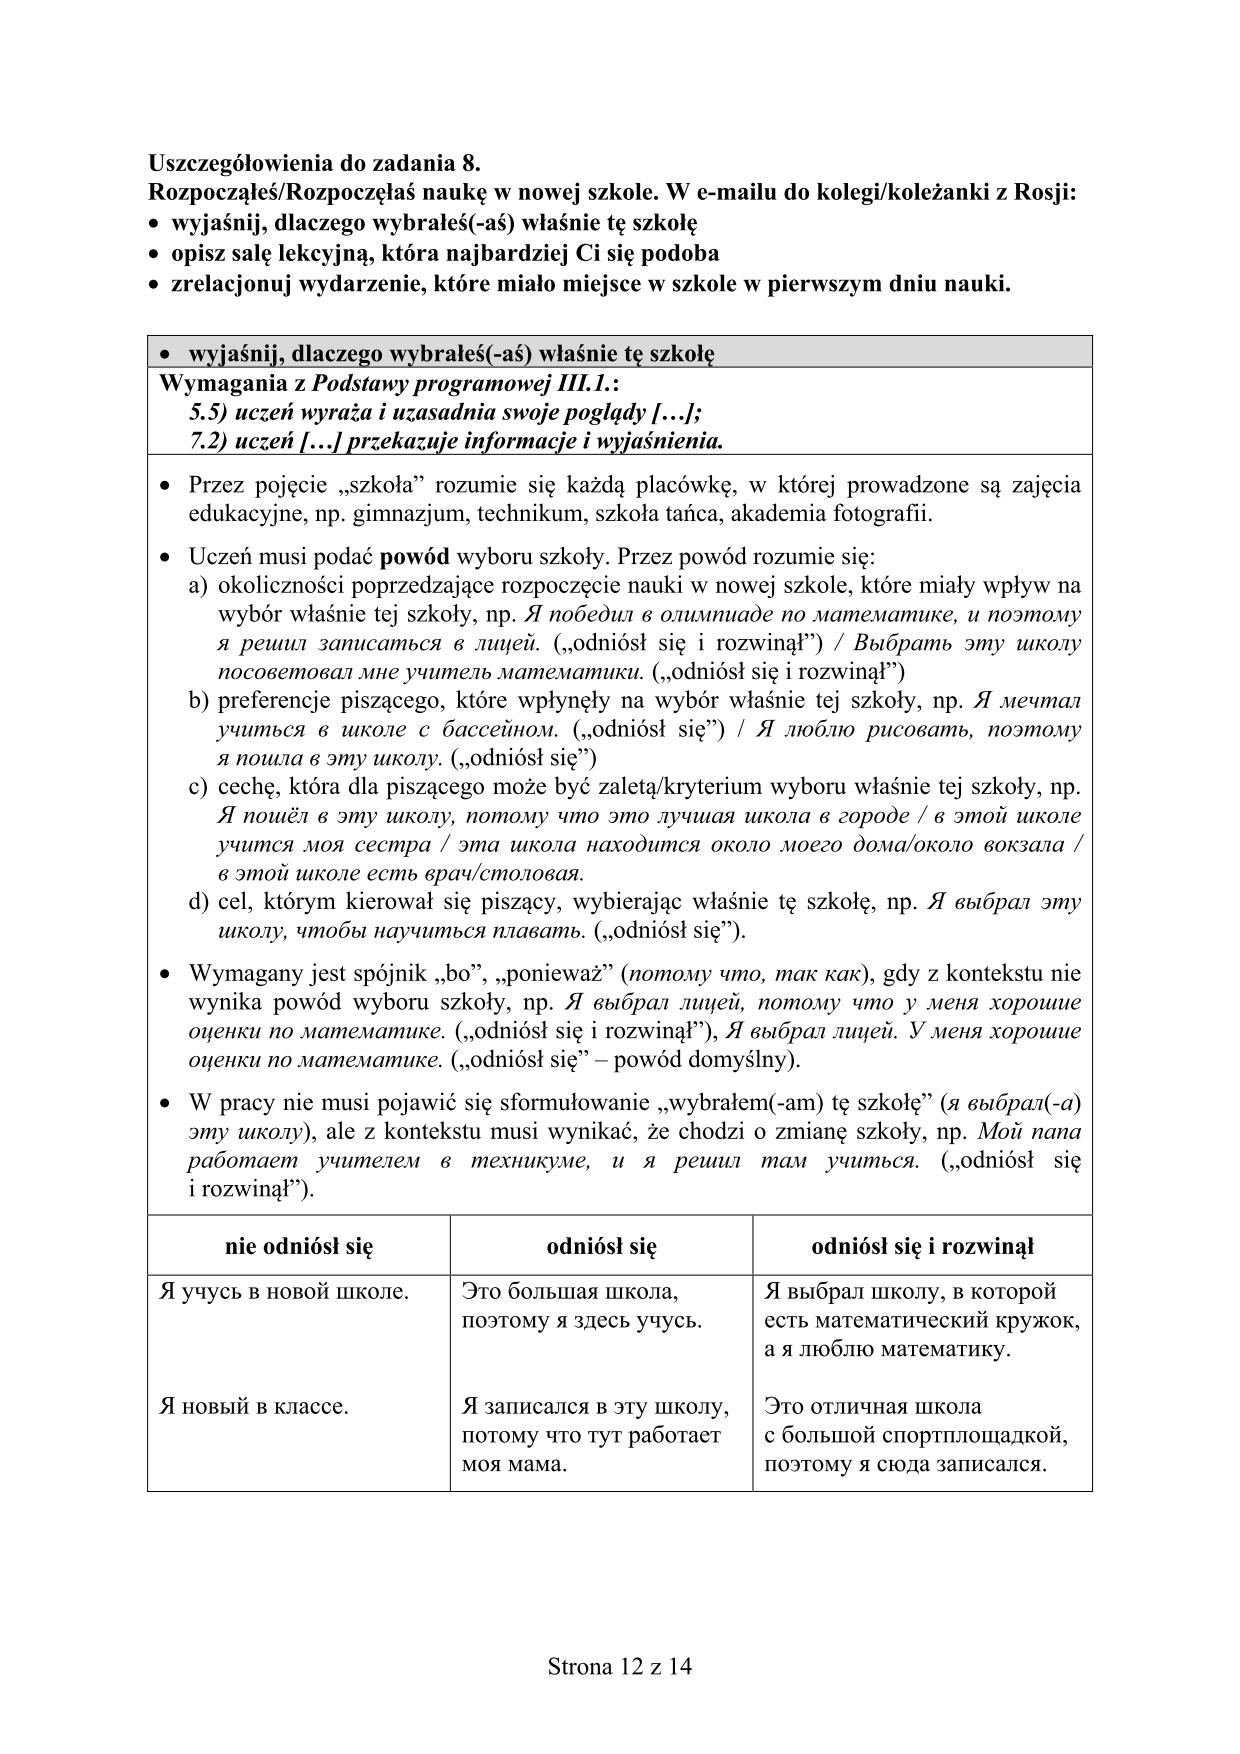 odpowiedzi-rosyjski-poziom-rozszezony-egzamin-gimnazjalny-2016-12